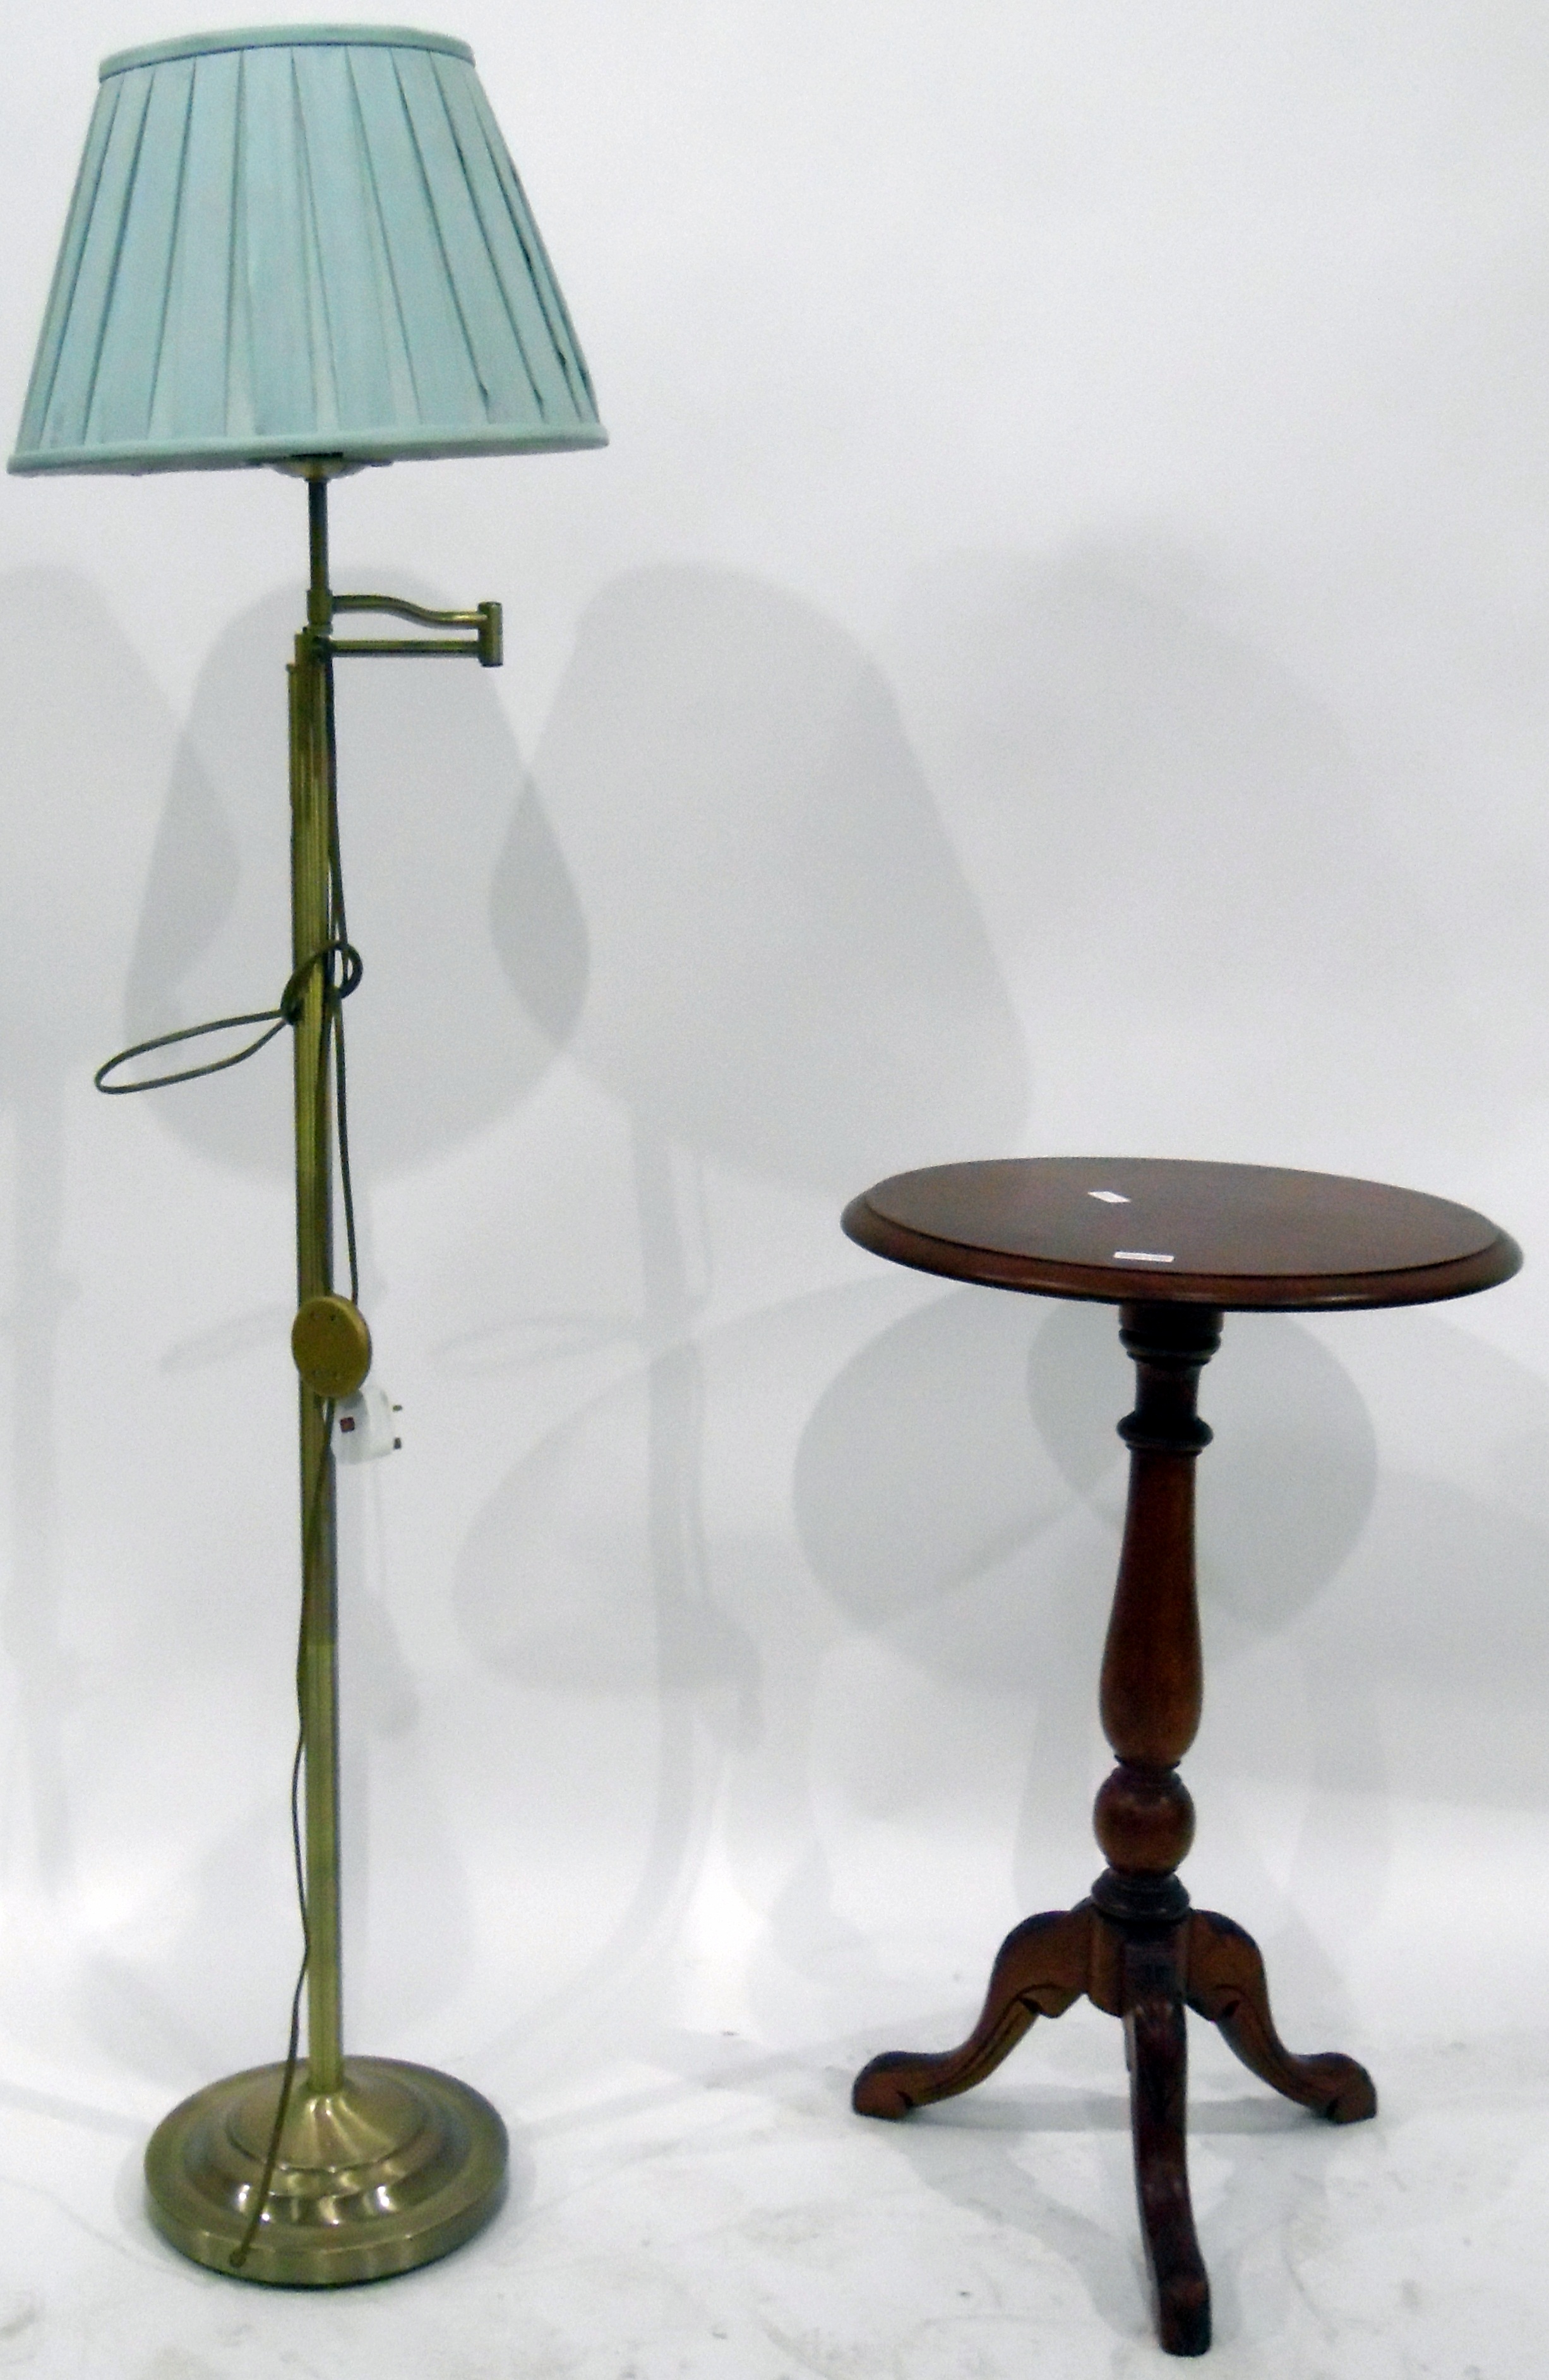 Modern circular tripod pedestal table, - Image 2 of 2